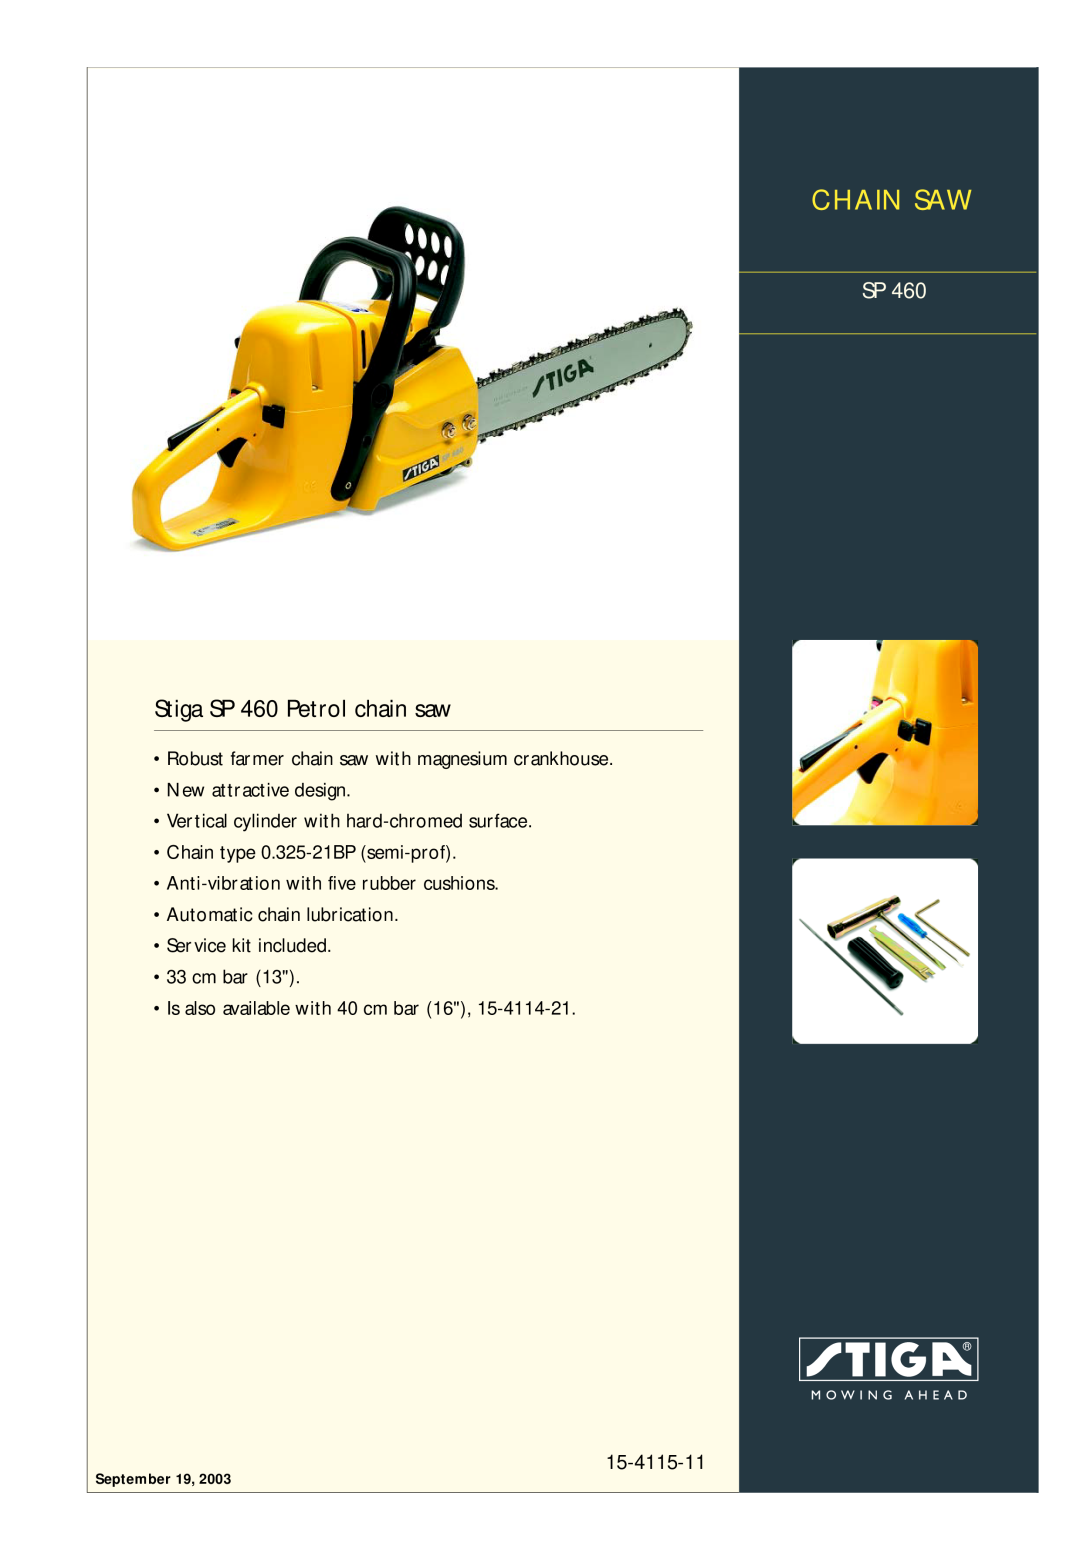 Stiga manual Chain Saw, Stiga SP 460 Petrol chain saw, 15-4115-11, New attractive design, •Automatic chain lubrication 